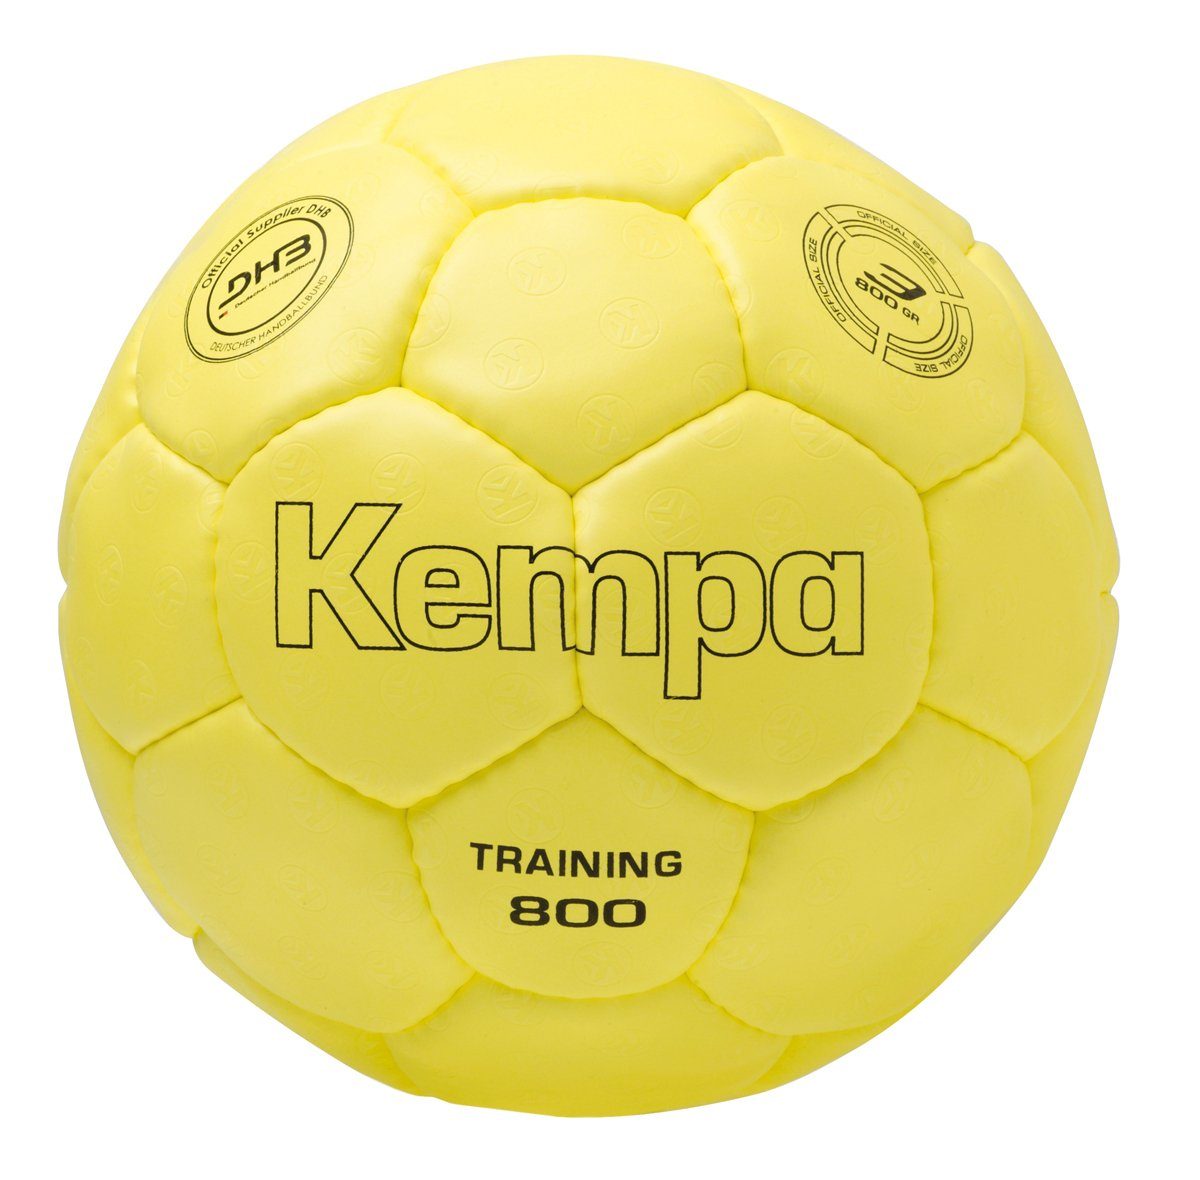 Kempa Handball Kempa Handball TRAINING 800 GRAMM